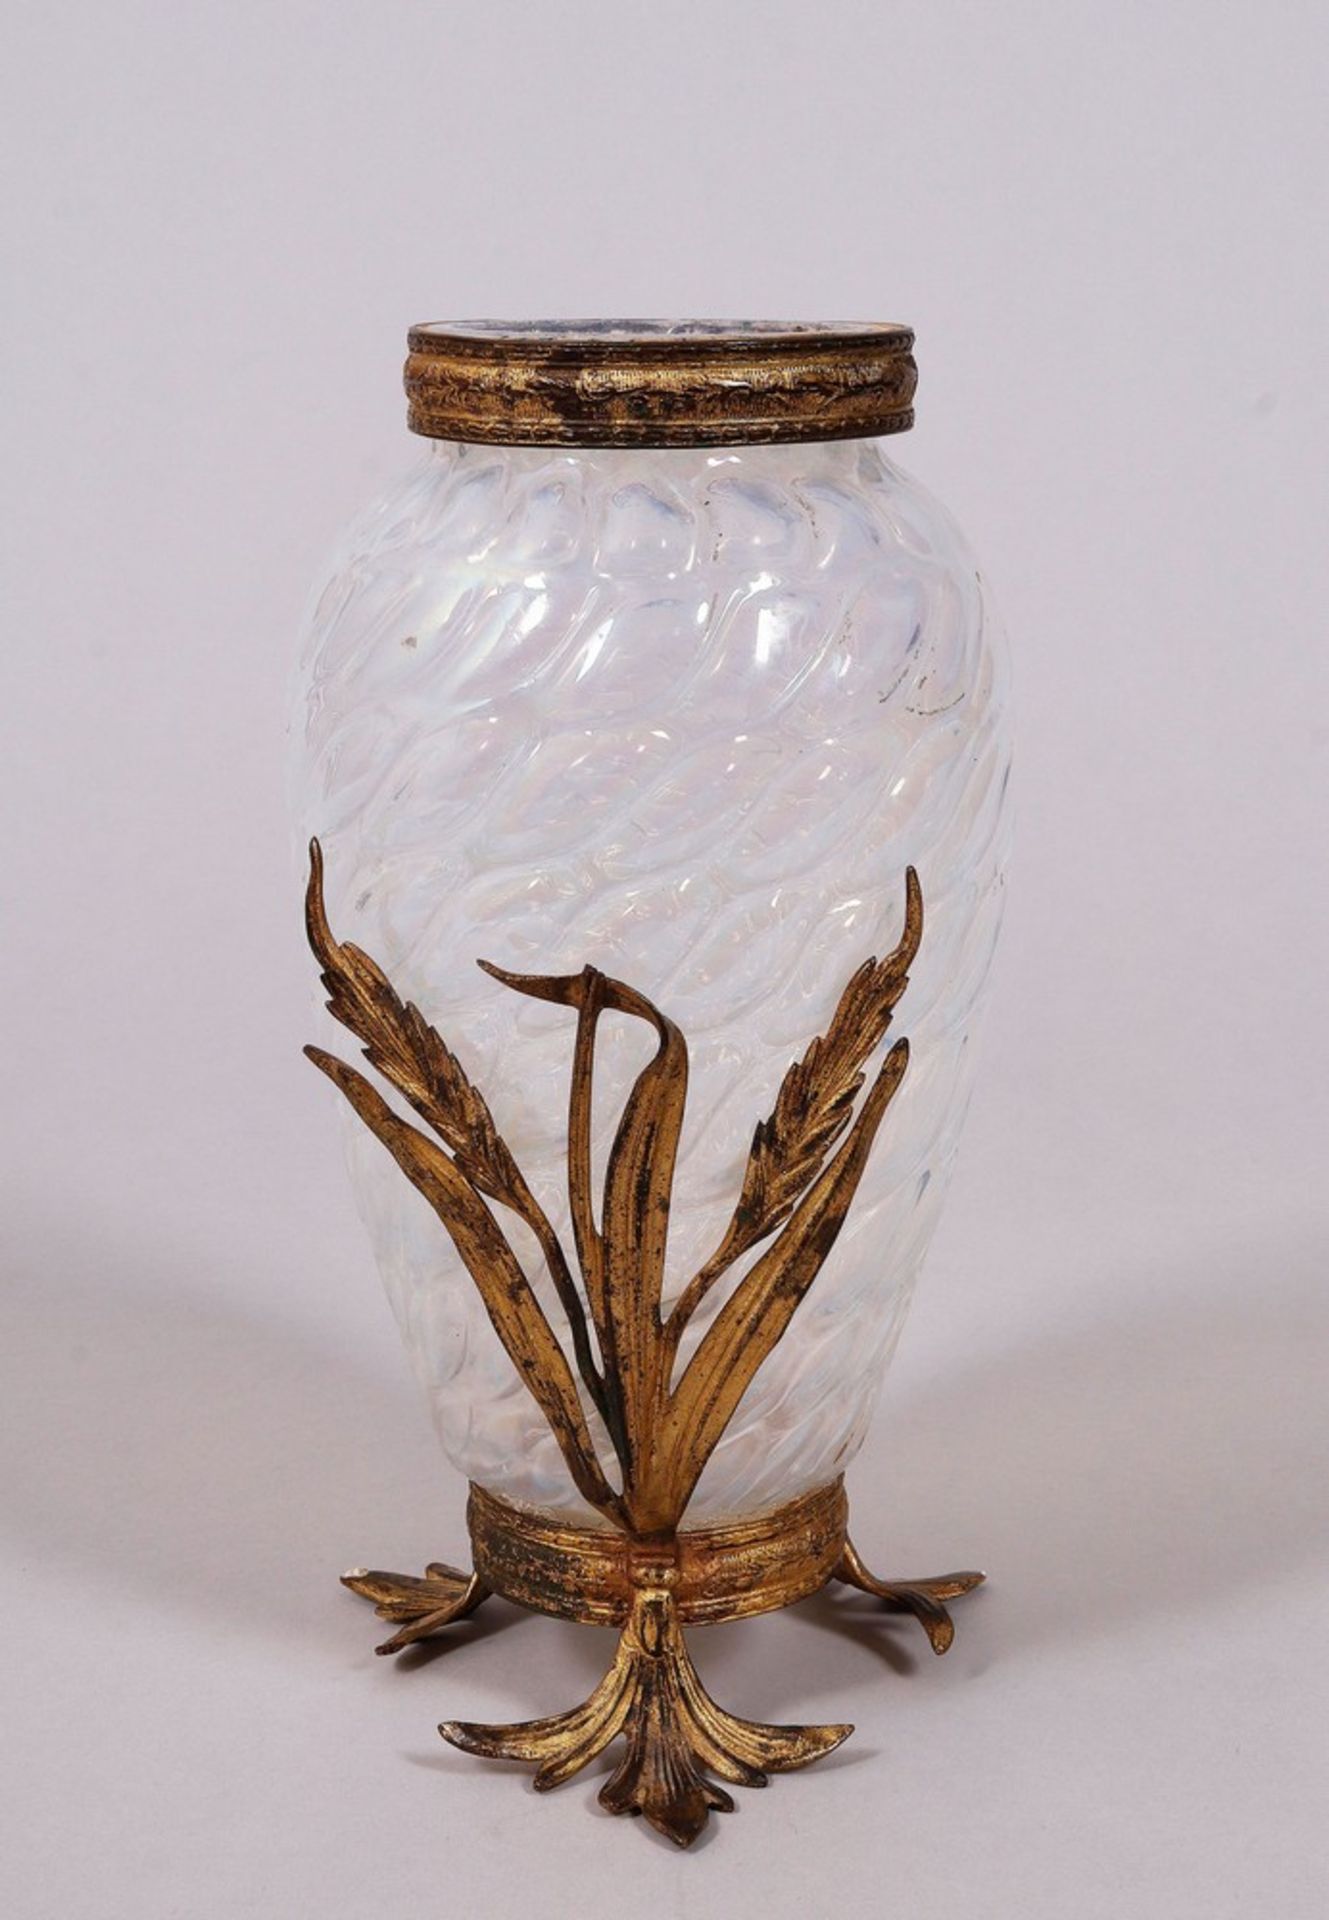 Art Nouveau vase, probably Bohemia, c. 1900